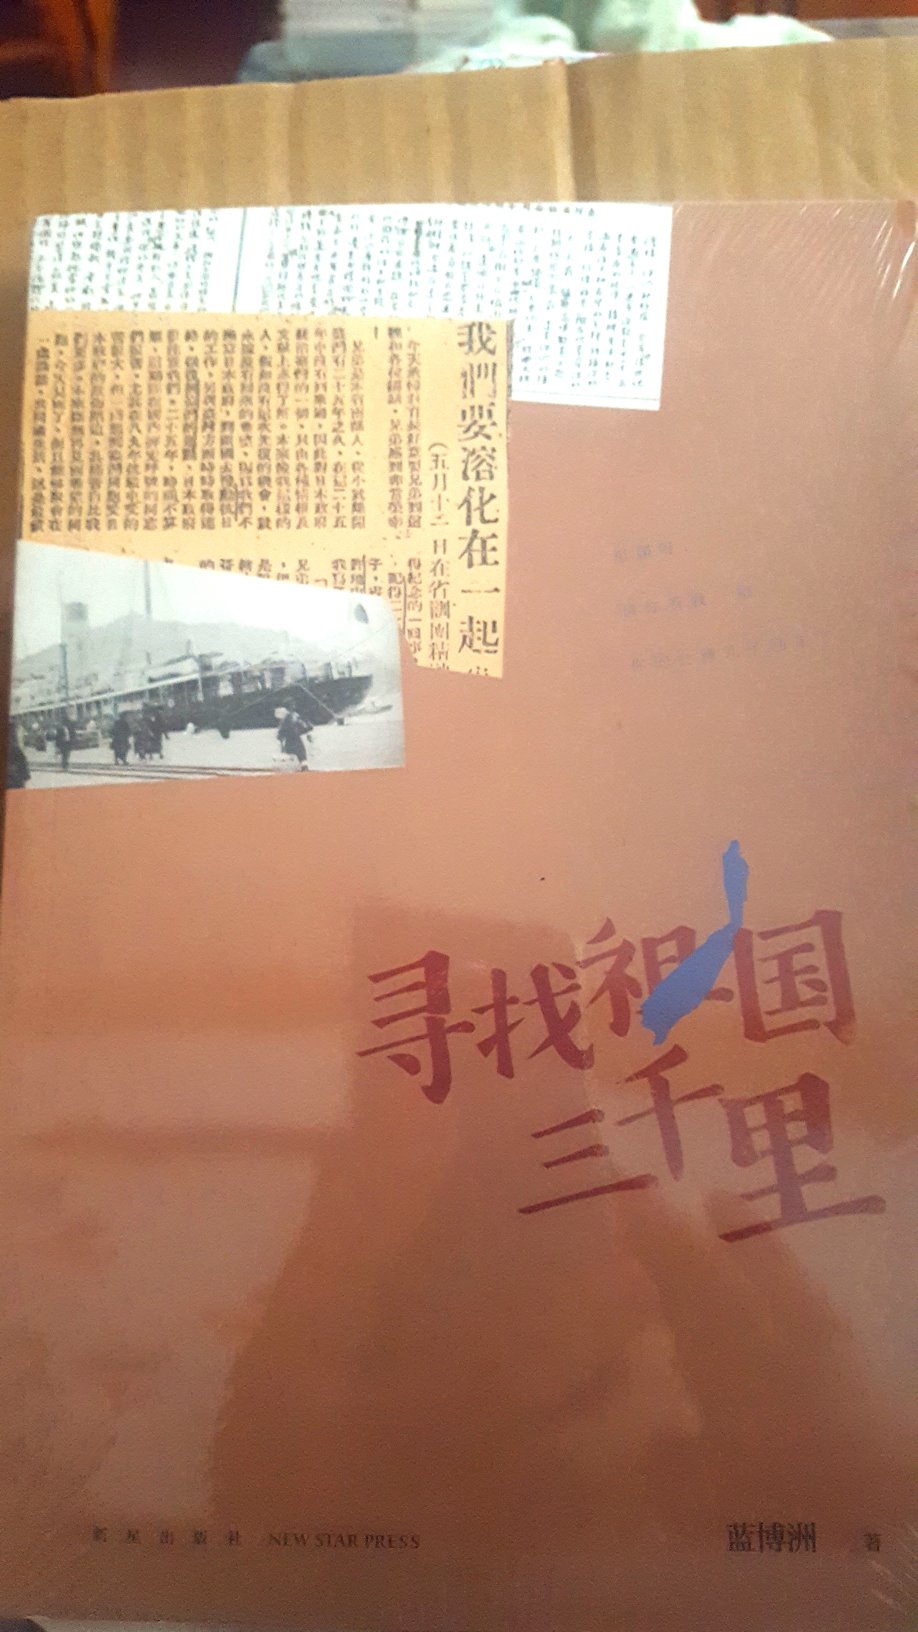 这是一本非常值得一读的好书，是台湾作家所著的纪实文学，写的是台湾的热血青年寻找祖国的经历，告诉你不为人知的历史。